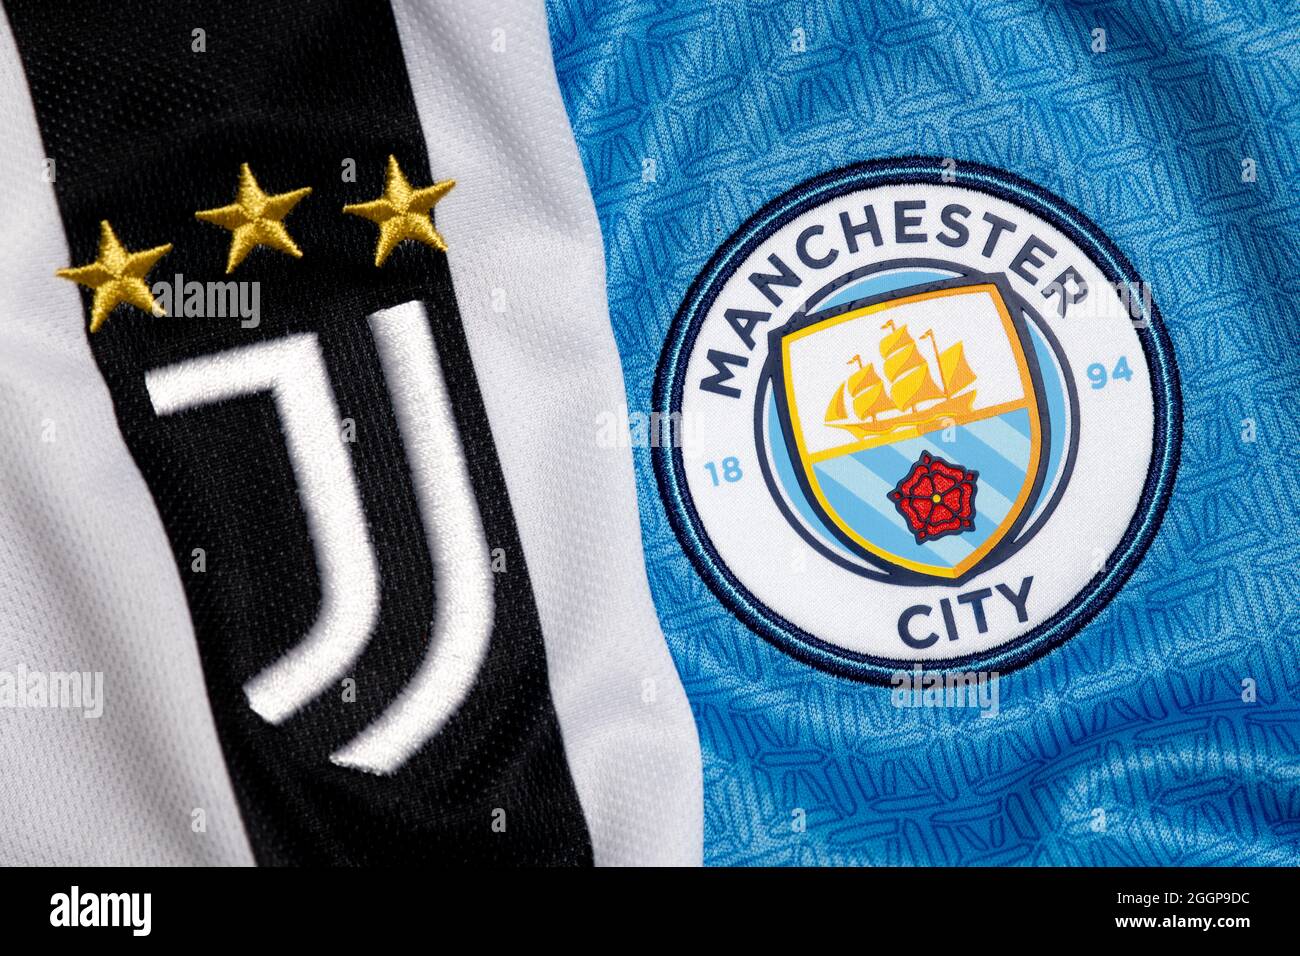 Primo piano dello stemma Juventus & Manchester City. Foto Stock